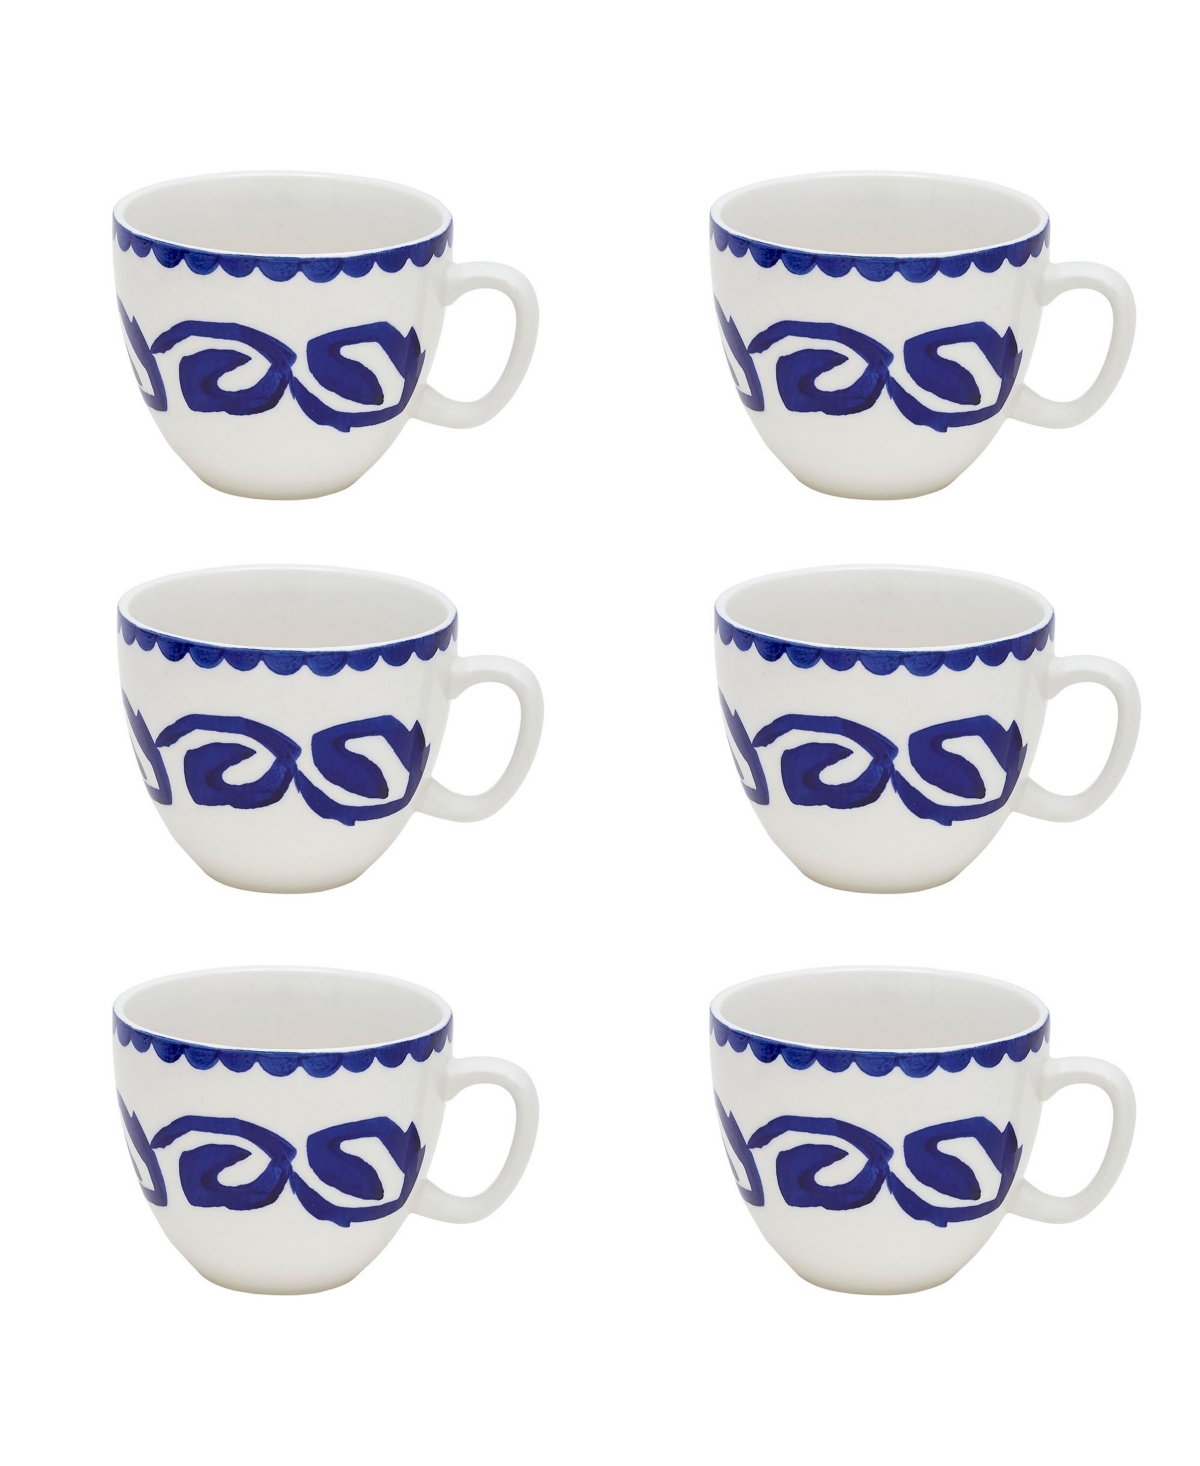 Hope Mugs, Set of 6 - Turquoise